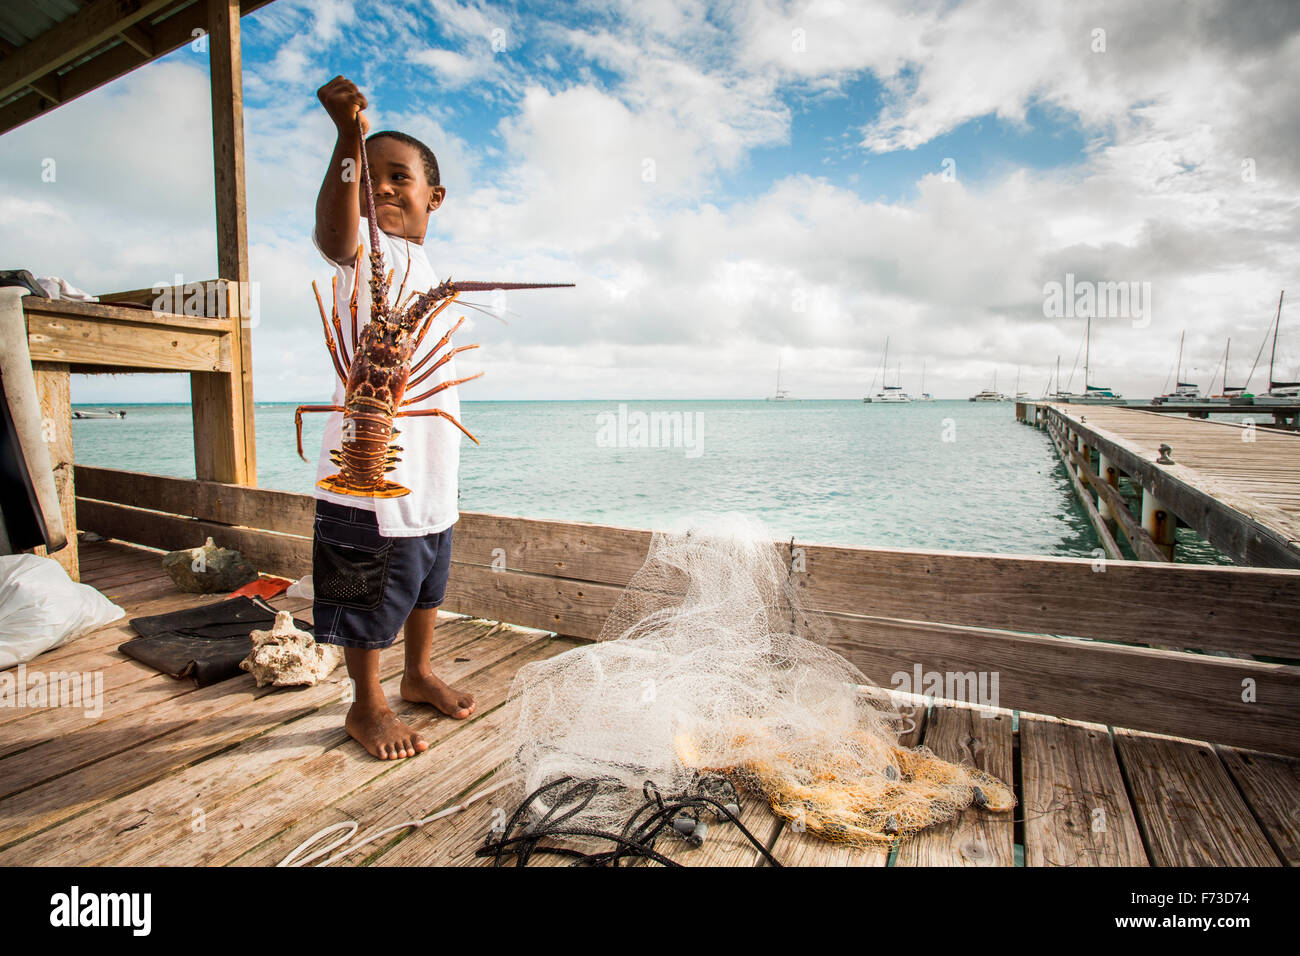 ANEGADA ISLAND, BRITISCHE JUNGFERNINSELN, KARIBIK. Ein kleiner Junge hält einen großen Hummer auf einem Dock in tropischer Umgebung. Stockfoto